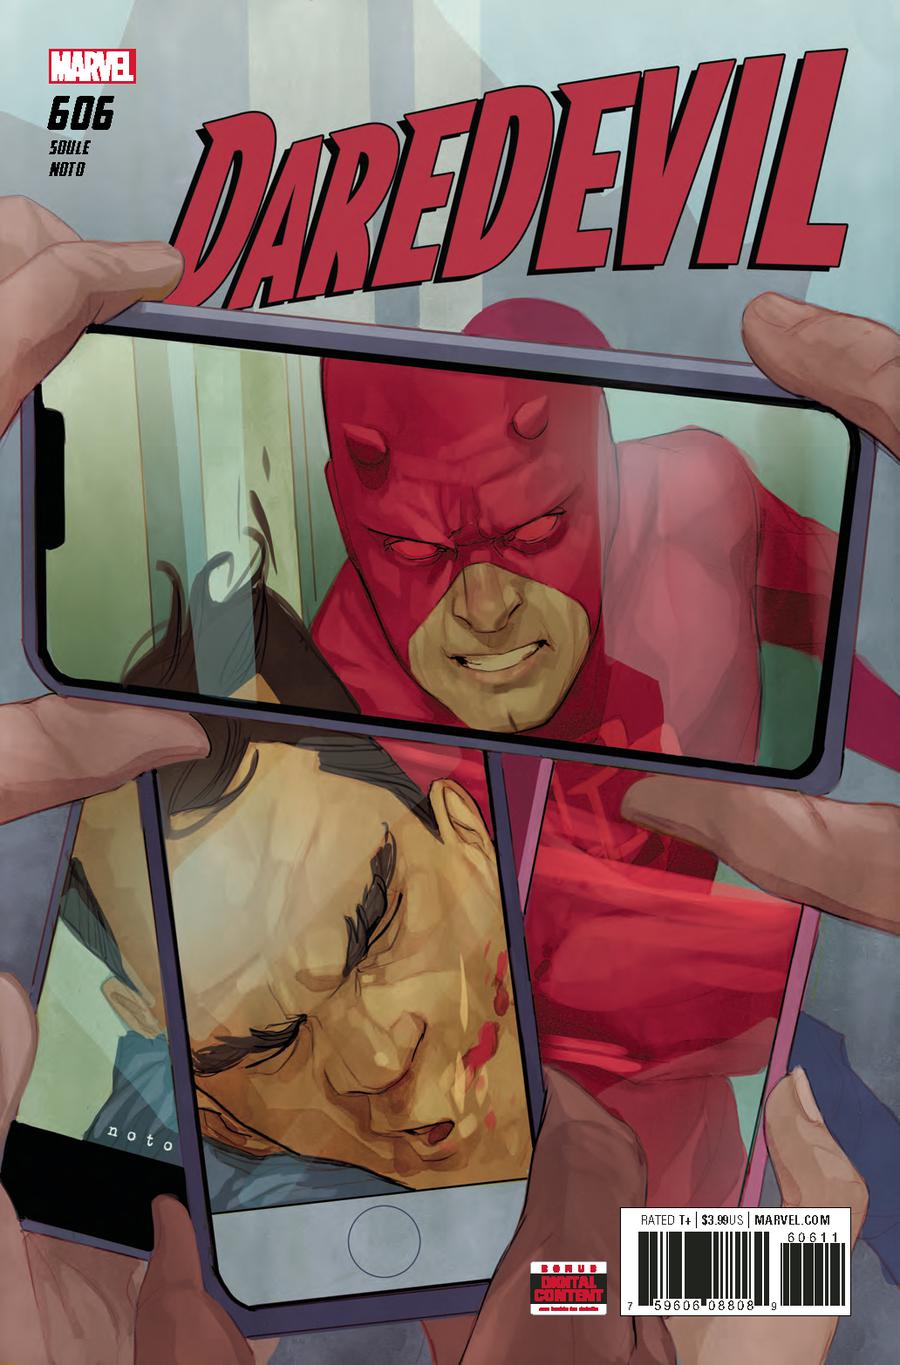 Daredevil Vol 5 #606